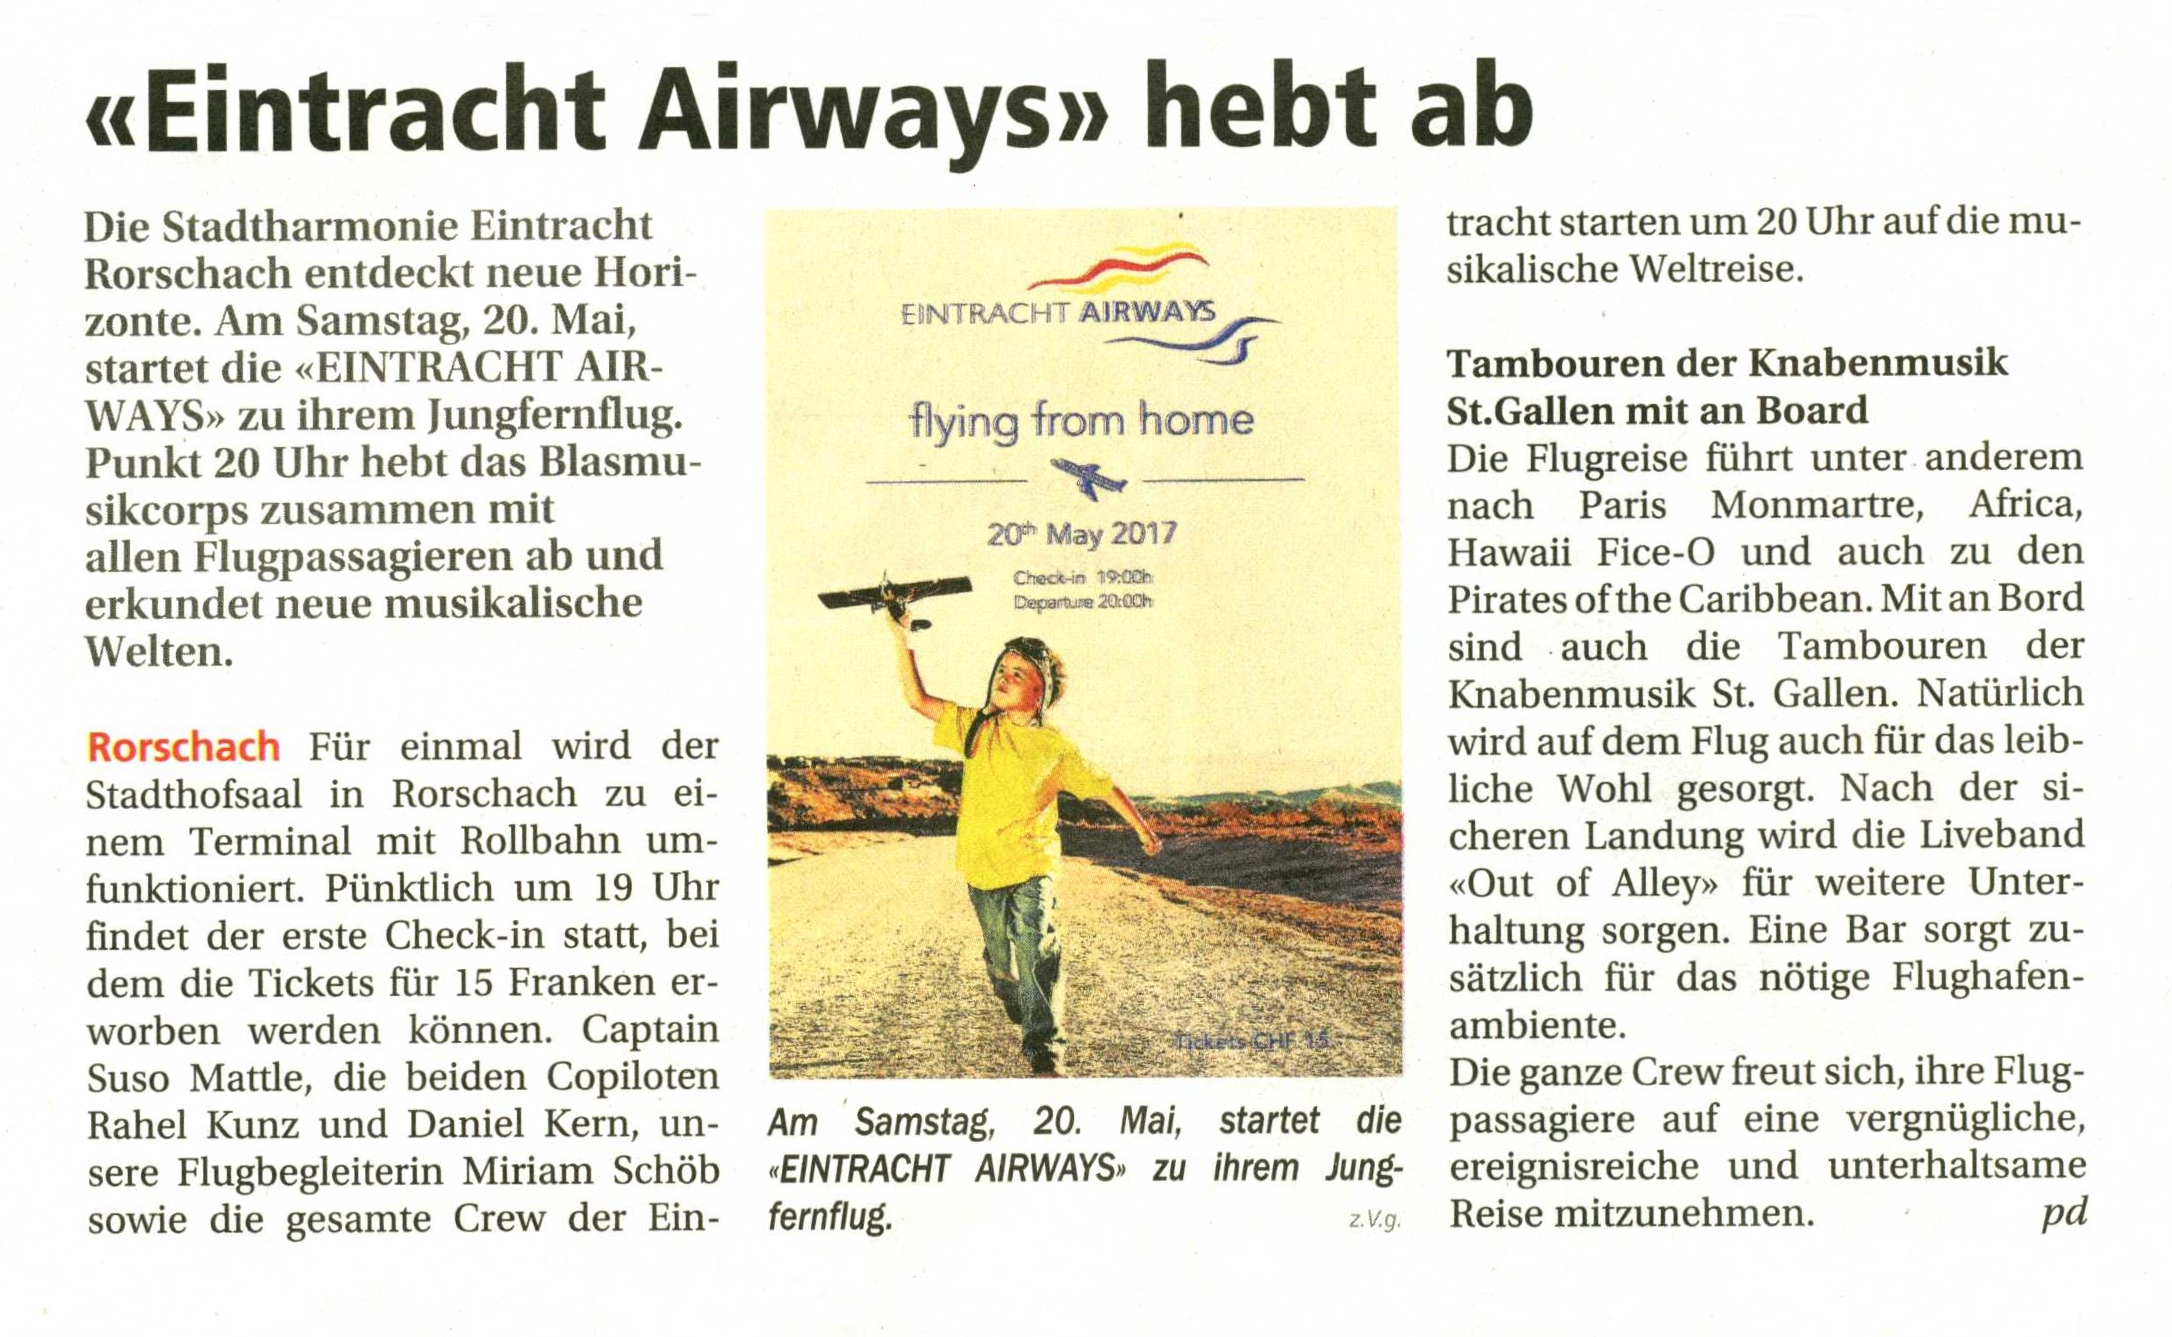 Eintracht Airways hebt ab - Vorschau auf das Fr�hlingskonzert der Stadtharmonie Eintracht